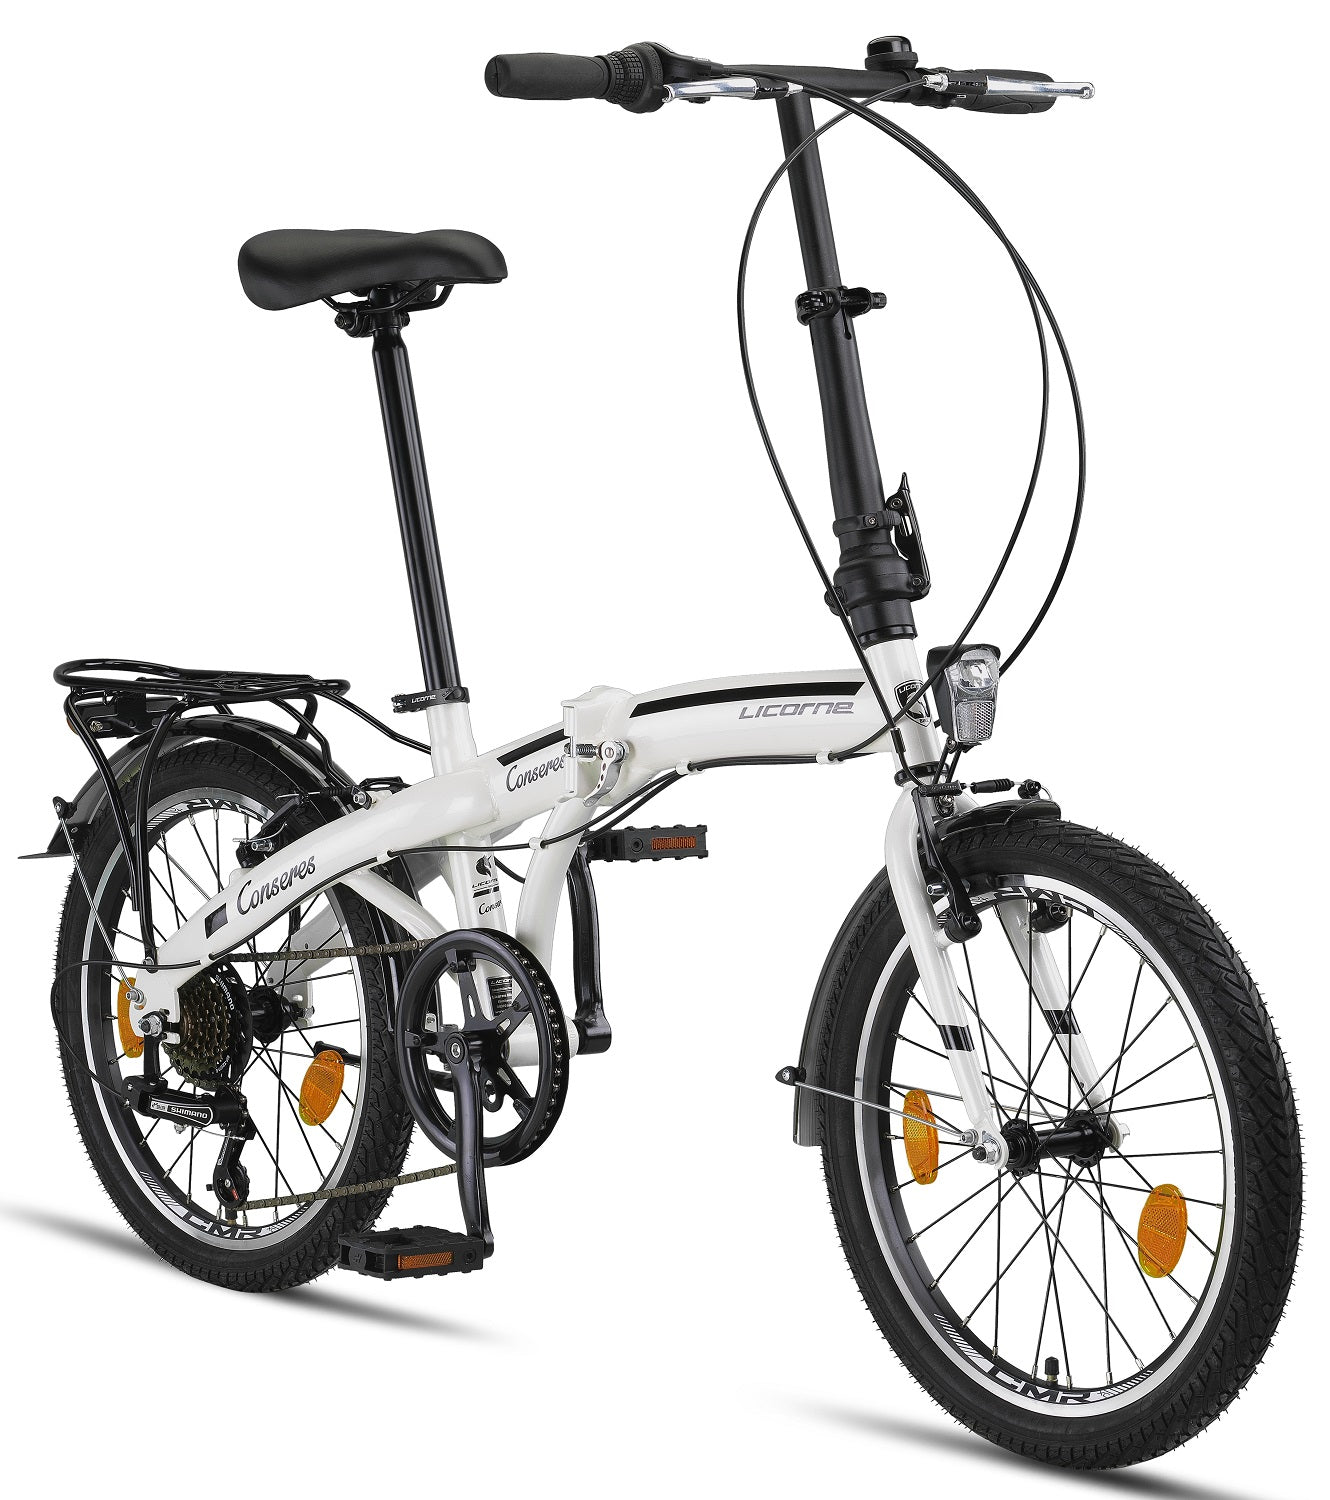 Licorne Bike Conseres Premium Folding Bike in 20 Inch - Bicicleta para hombres, niños, niñas y señoras - Shimano 6 Speed Gear - Holland Bike